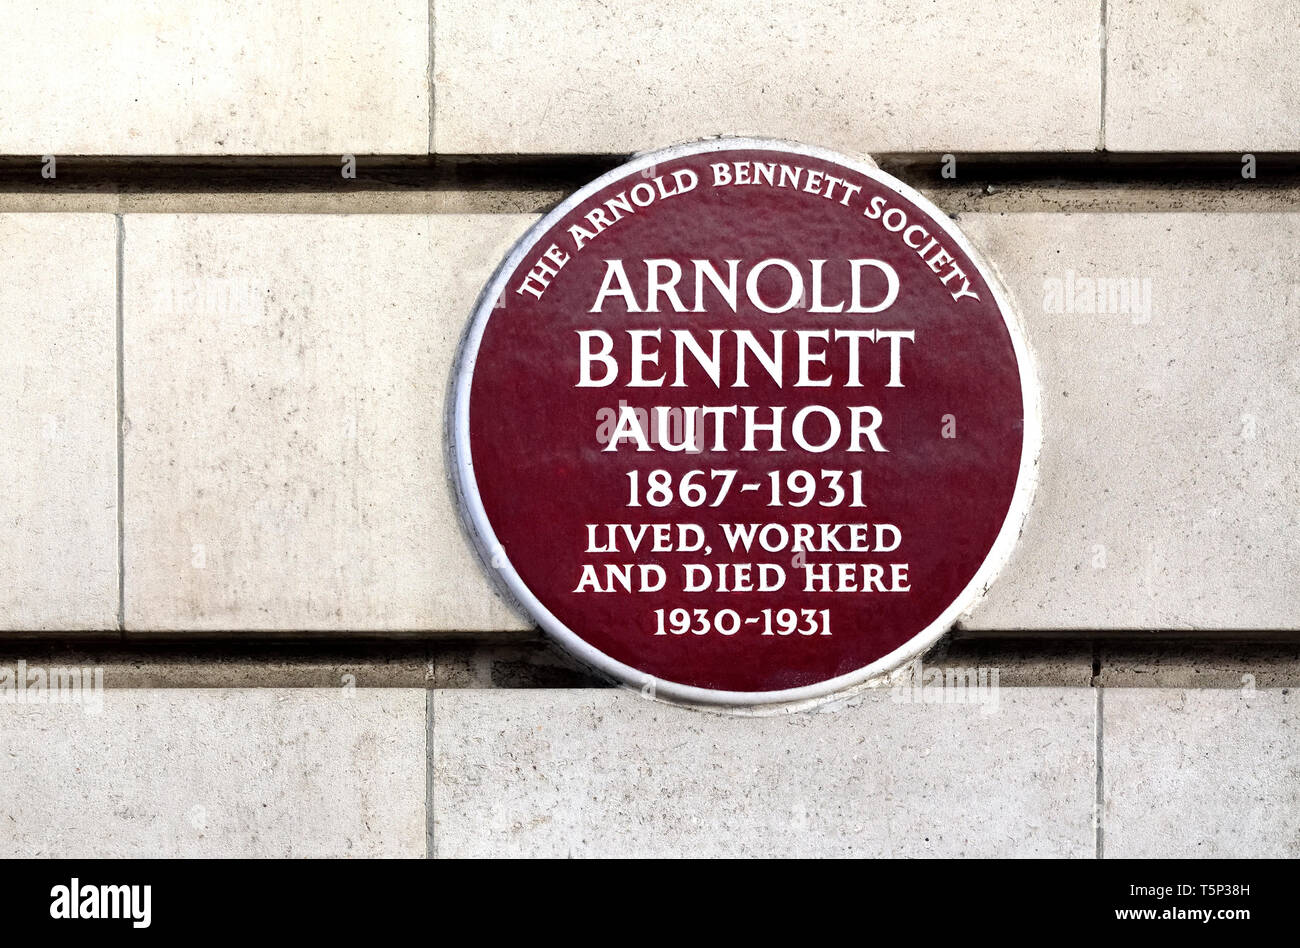 Londres, Angleterre, Royaume-Uni. Blue Plaque commémorative : Arnold Bennett auteur 1867-1931 a vécu, travaillé et sont morts ici 1930-1931. Cour de Chiltern, Baker Street Banque D'Images